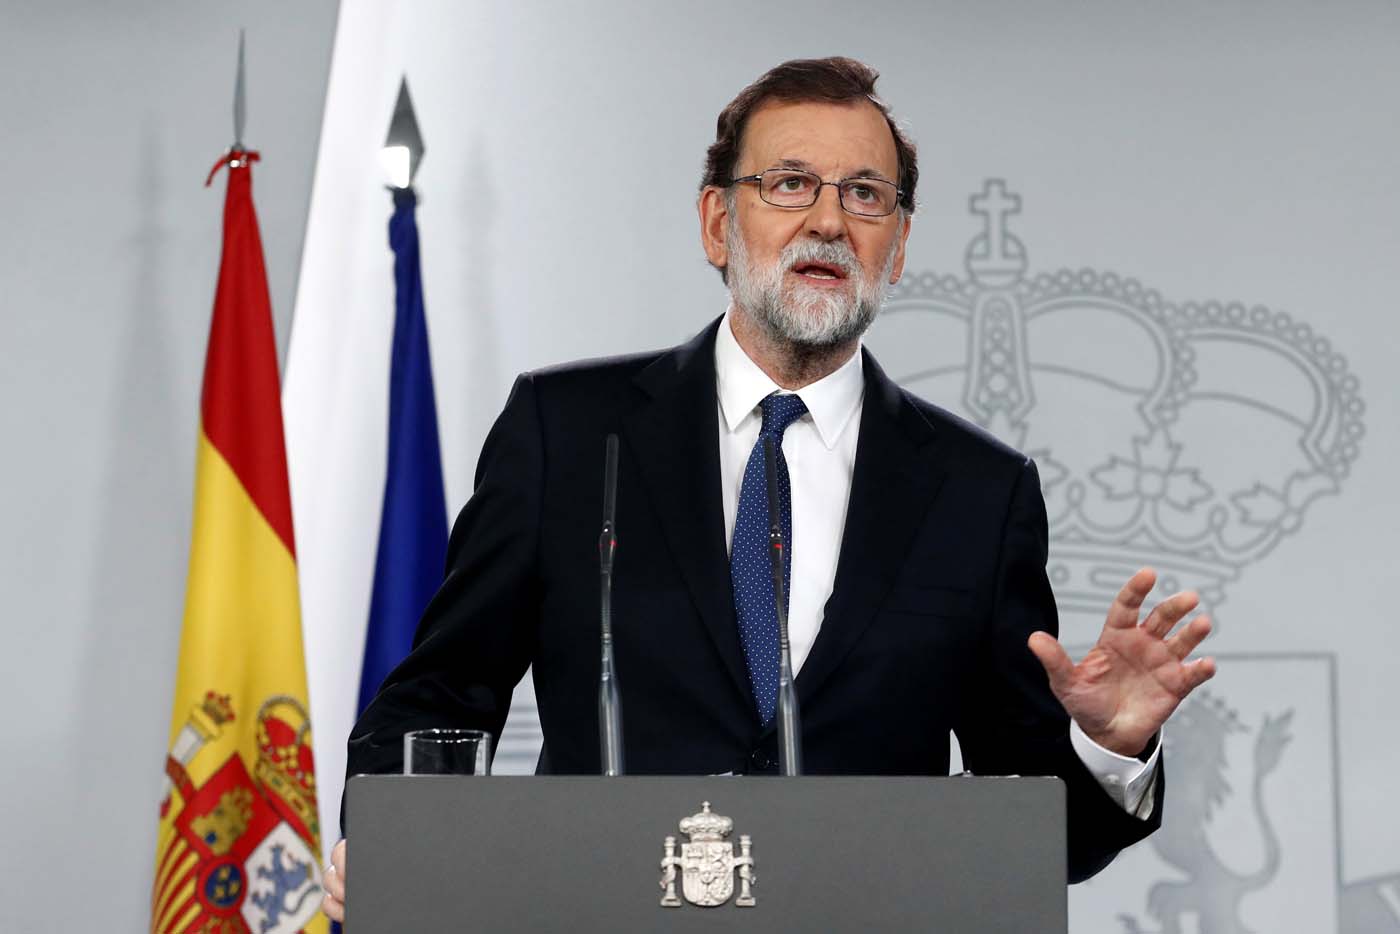 Mariano Rajoy defiende ataque en Siria como respuesta legítima y proporcionada